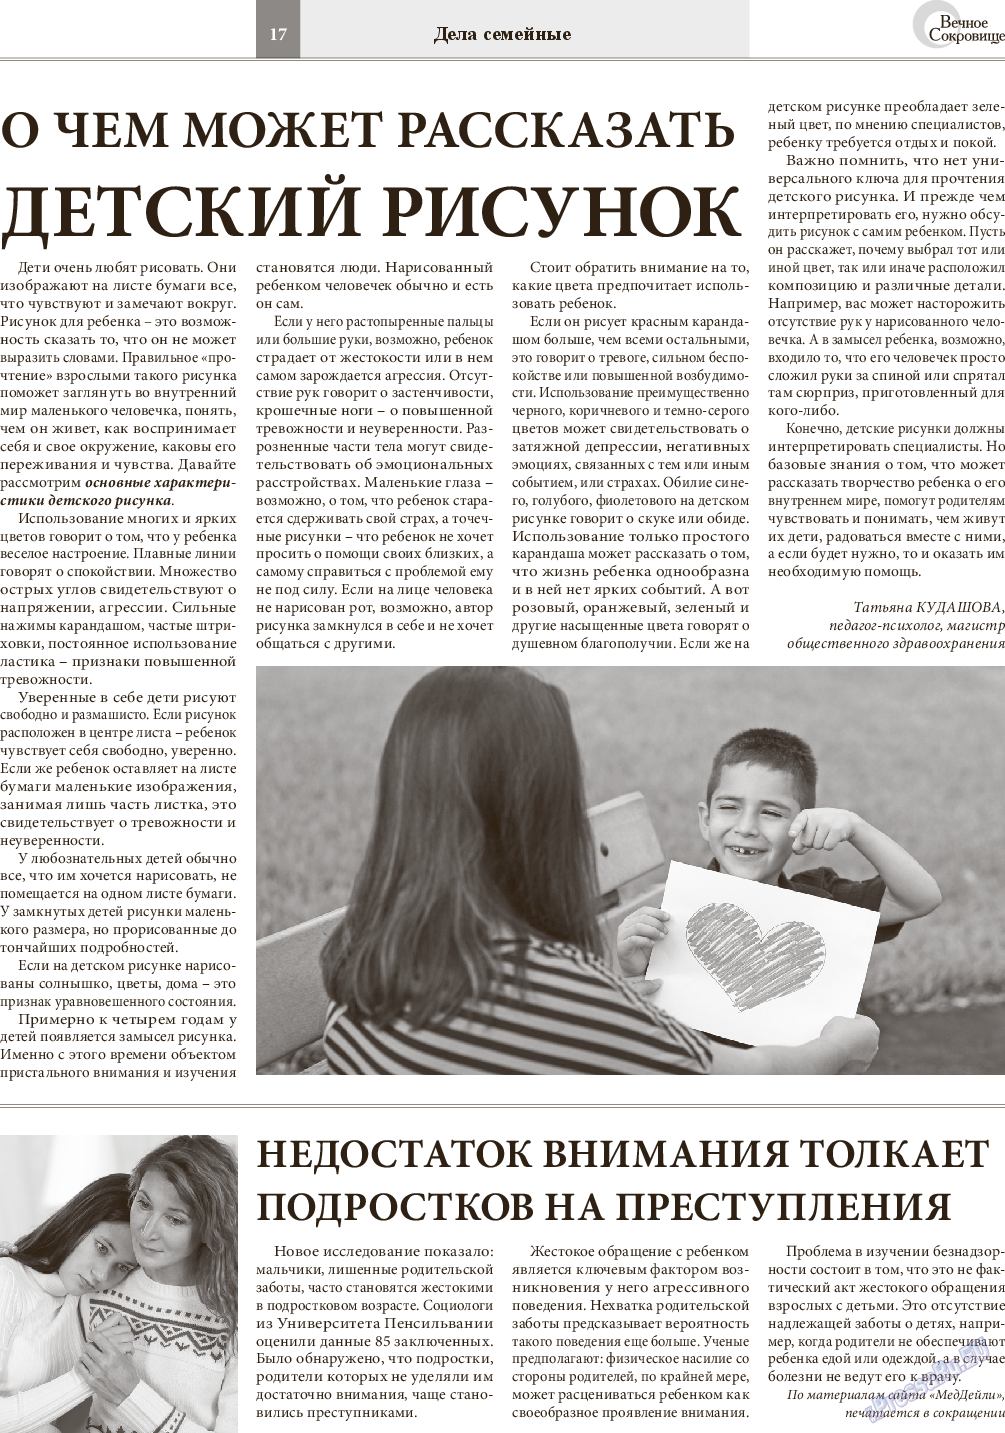 Вечное сокровище, газета. 2014 №6 стр.17